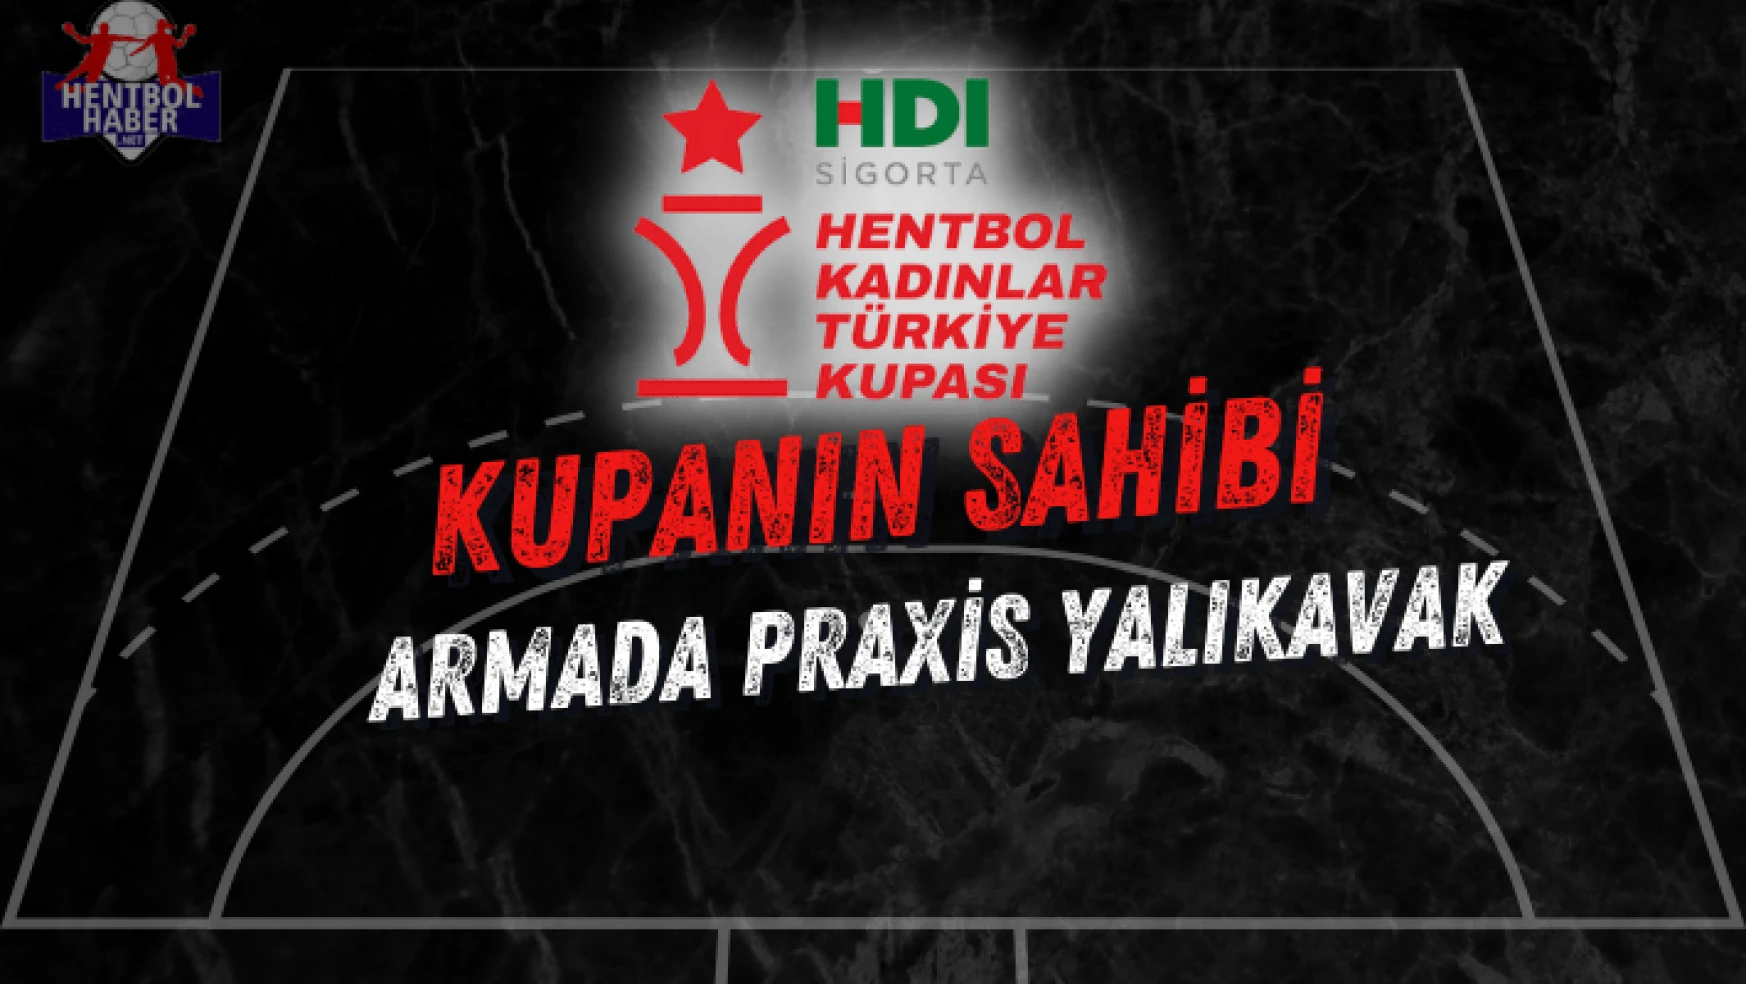 HDI Sigorta Türkiye Kupası'nın sahibi Armada Praxis Yalıkavak